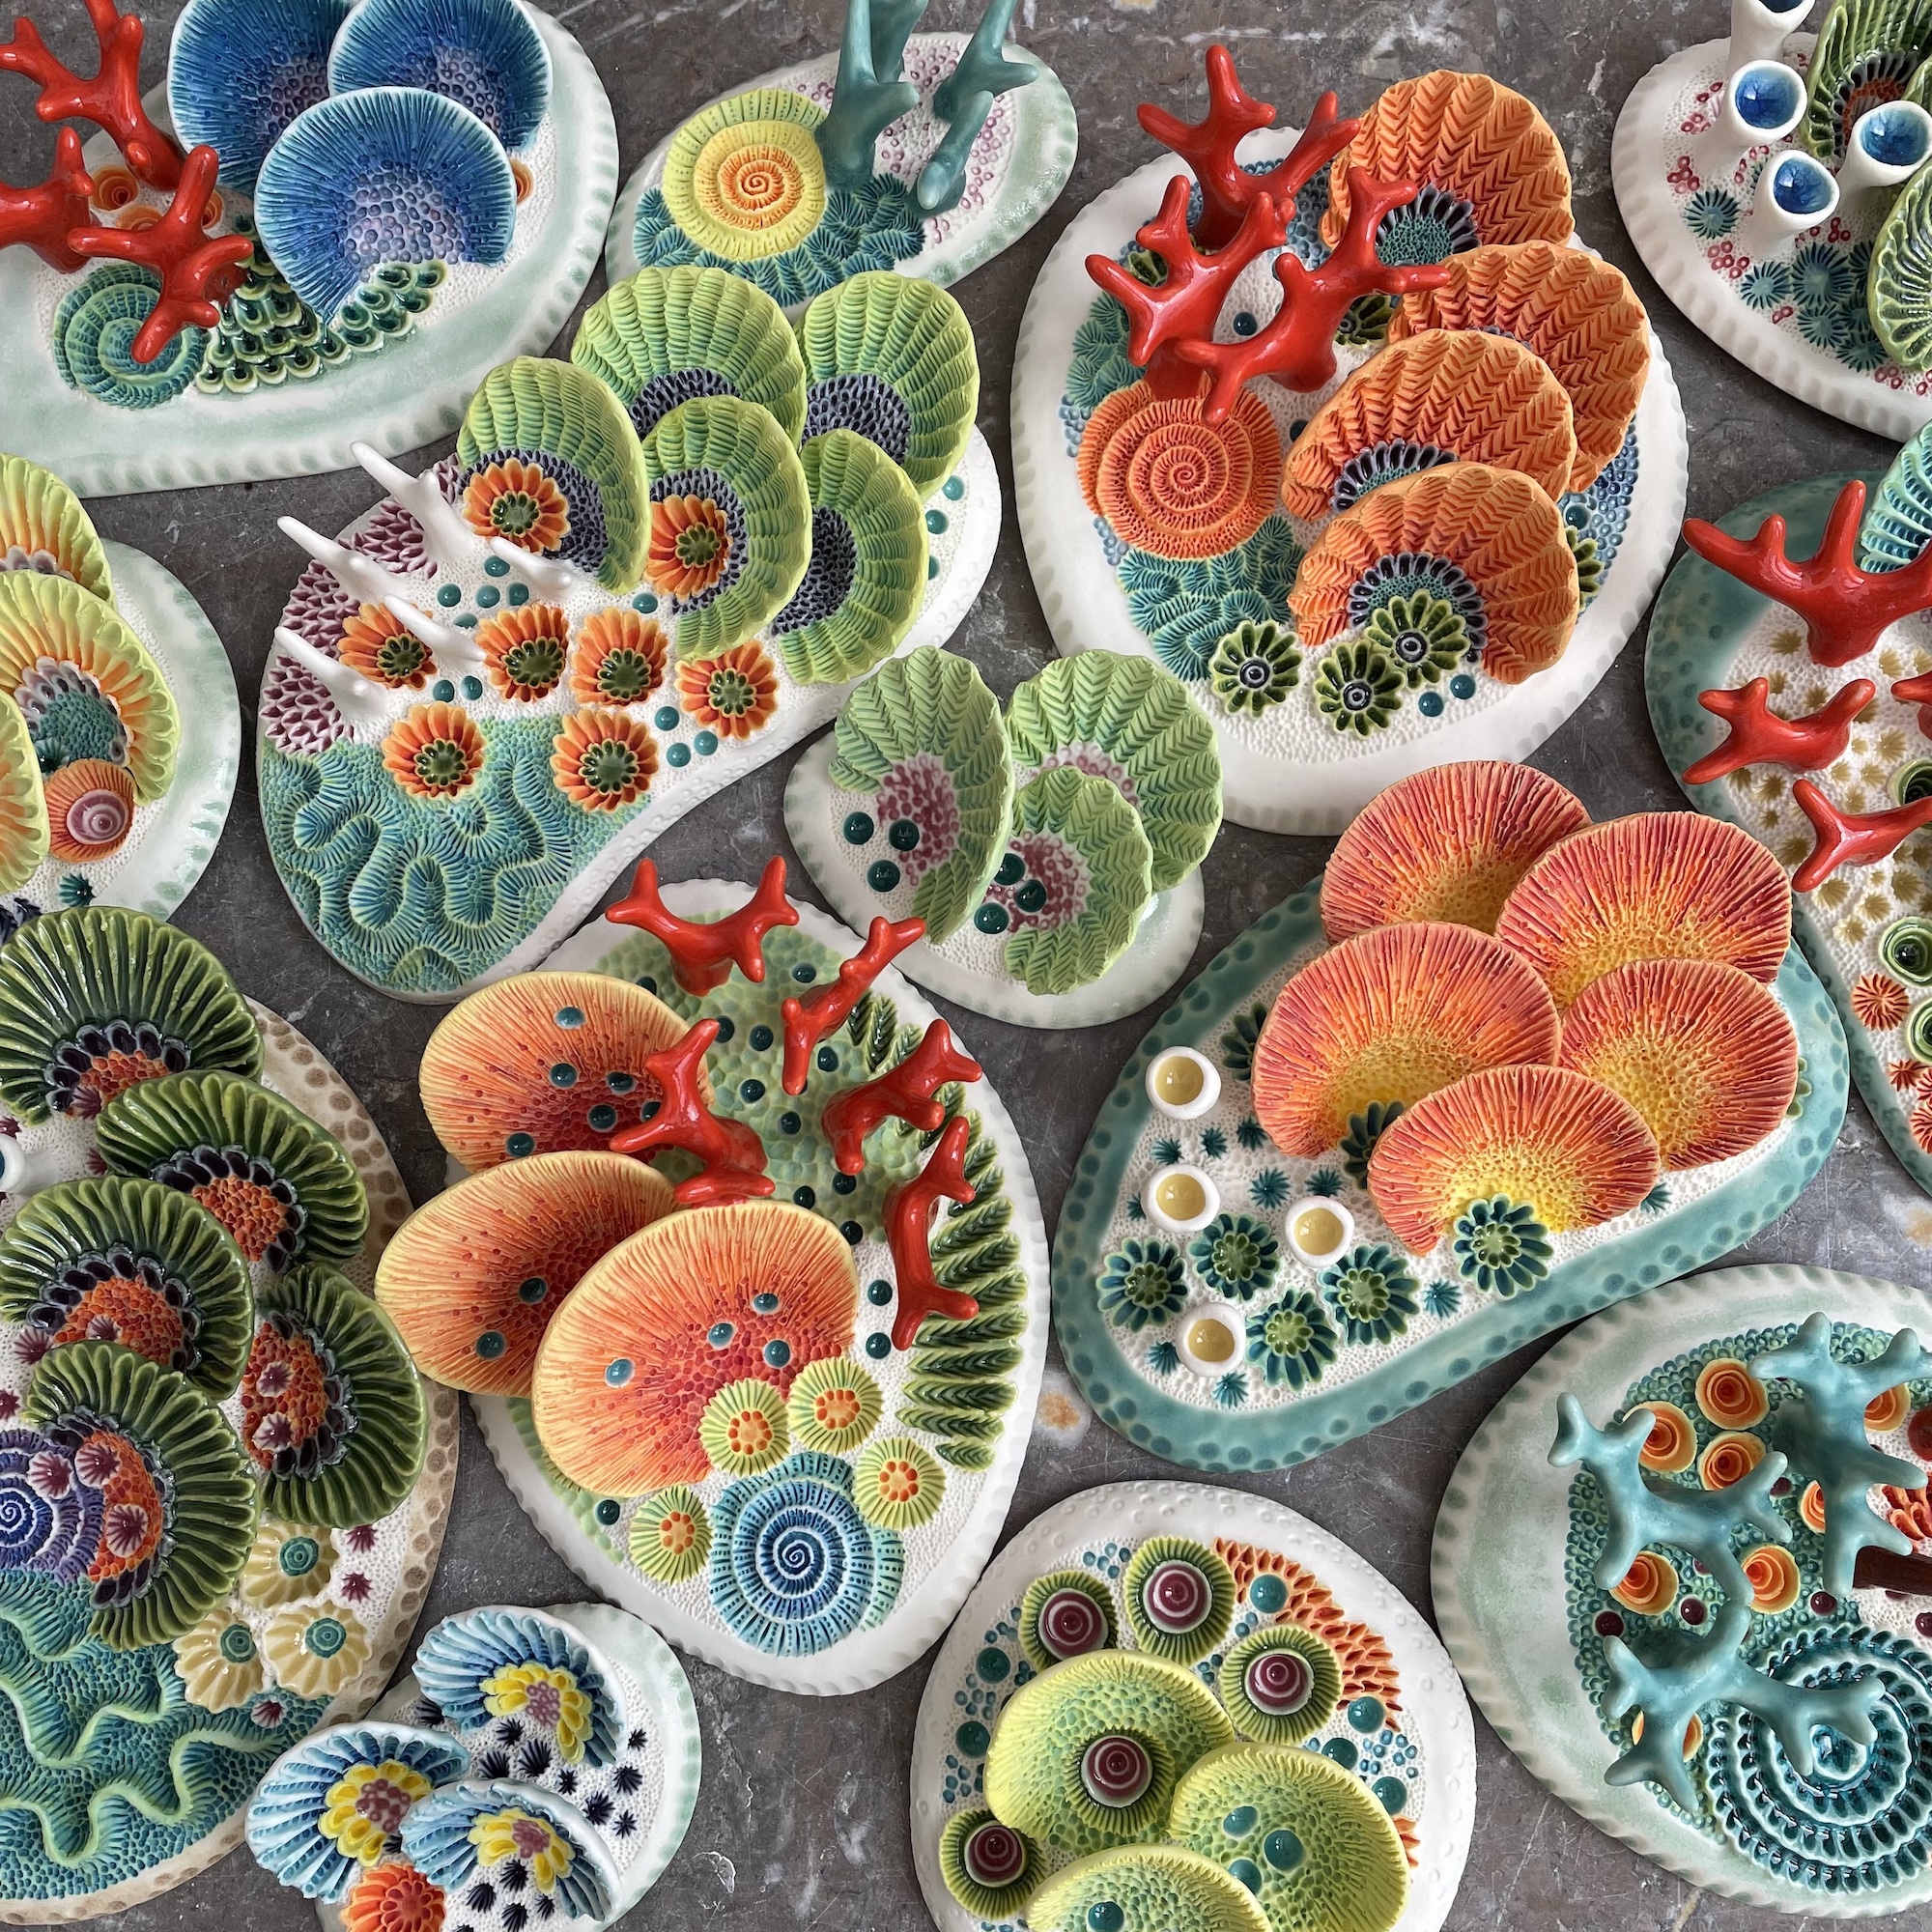 Lisa Stevens’ Ceramic Sculptures Capture Coral-Inspired Motifs in Vibrant Color